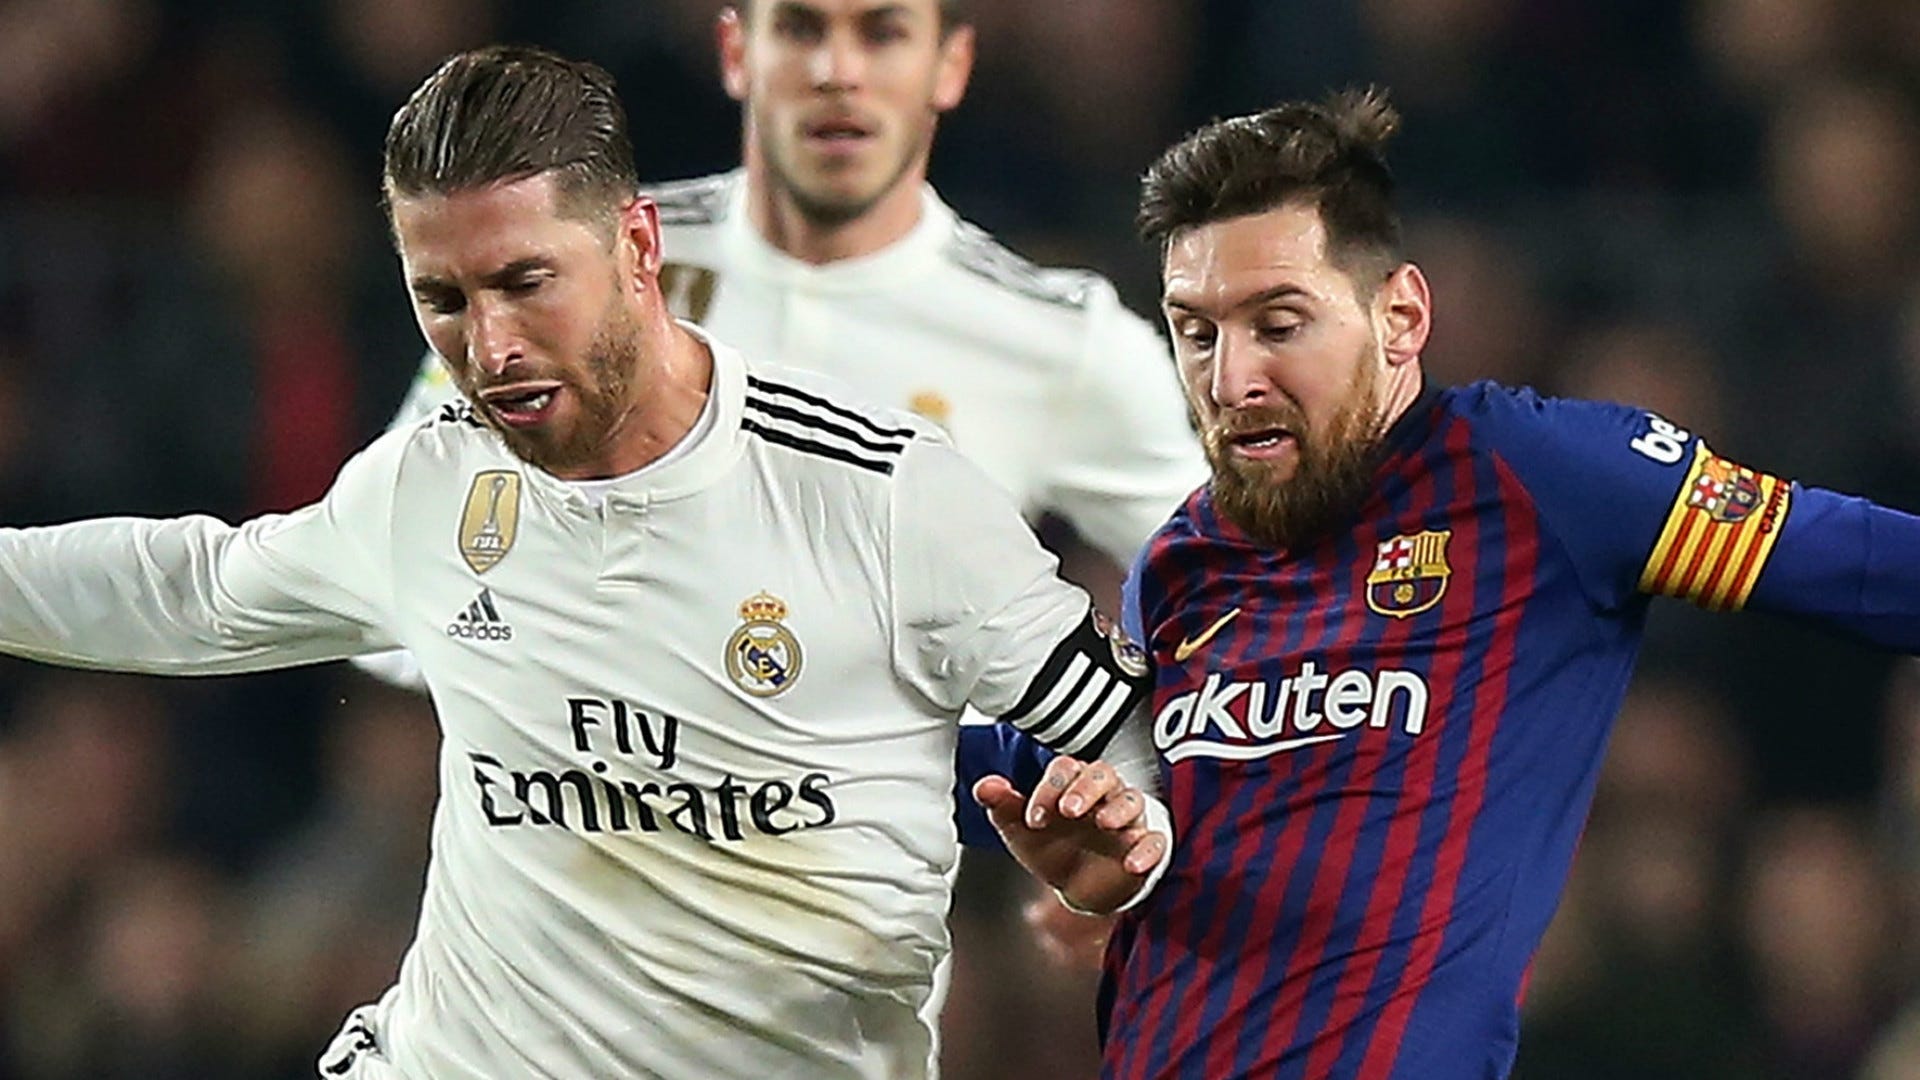 Sergio Ramos và những đồng đội của anh đã ghi được tới 6 bàn thắng trong trận đấu với Barca. Hãy cùng xem lại những khoảnh khắc đầy kịch tính, không kém phần hấp dẫn của trận đấu này!